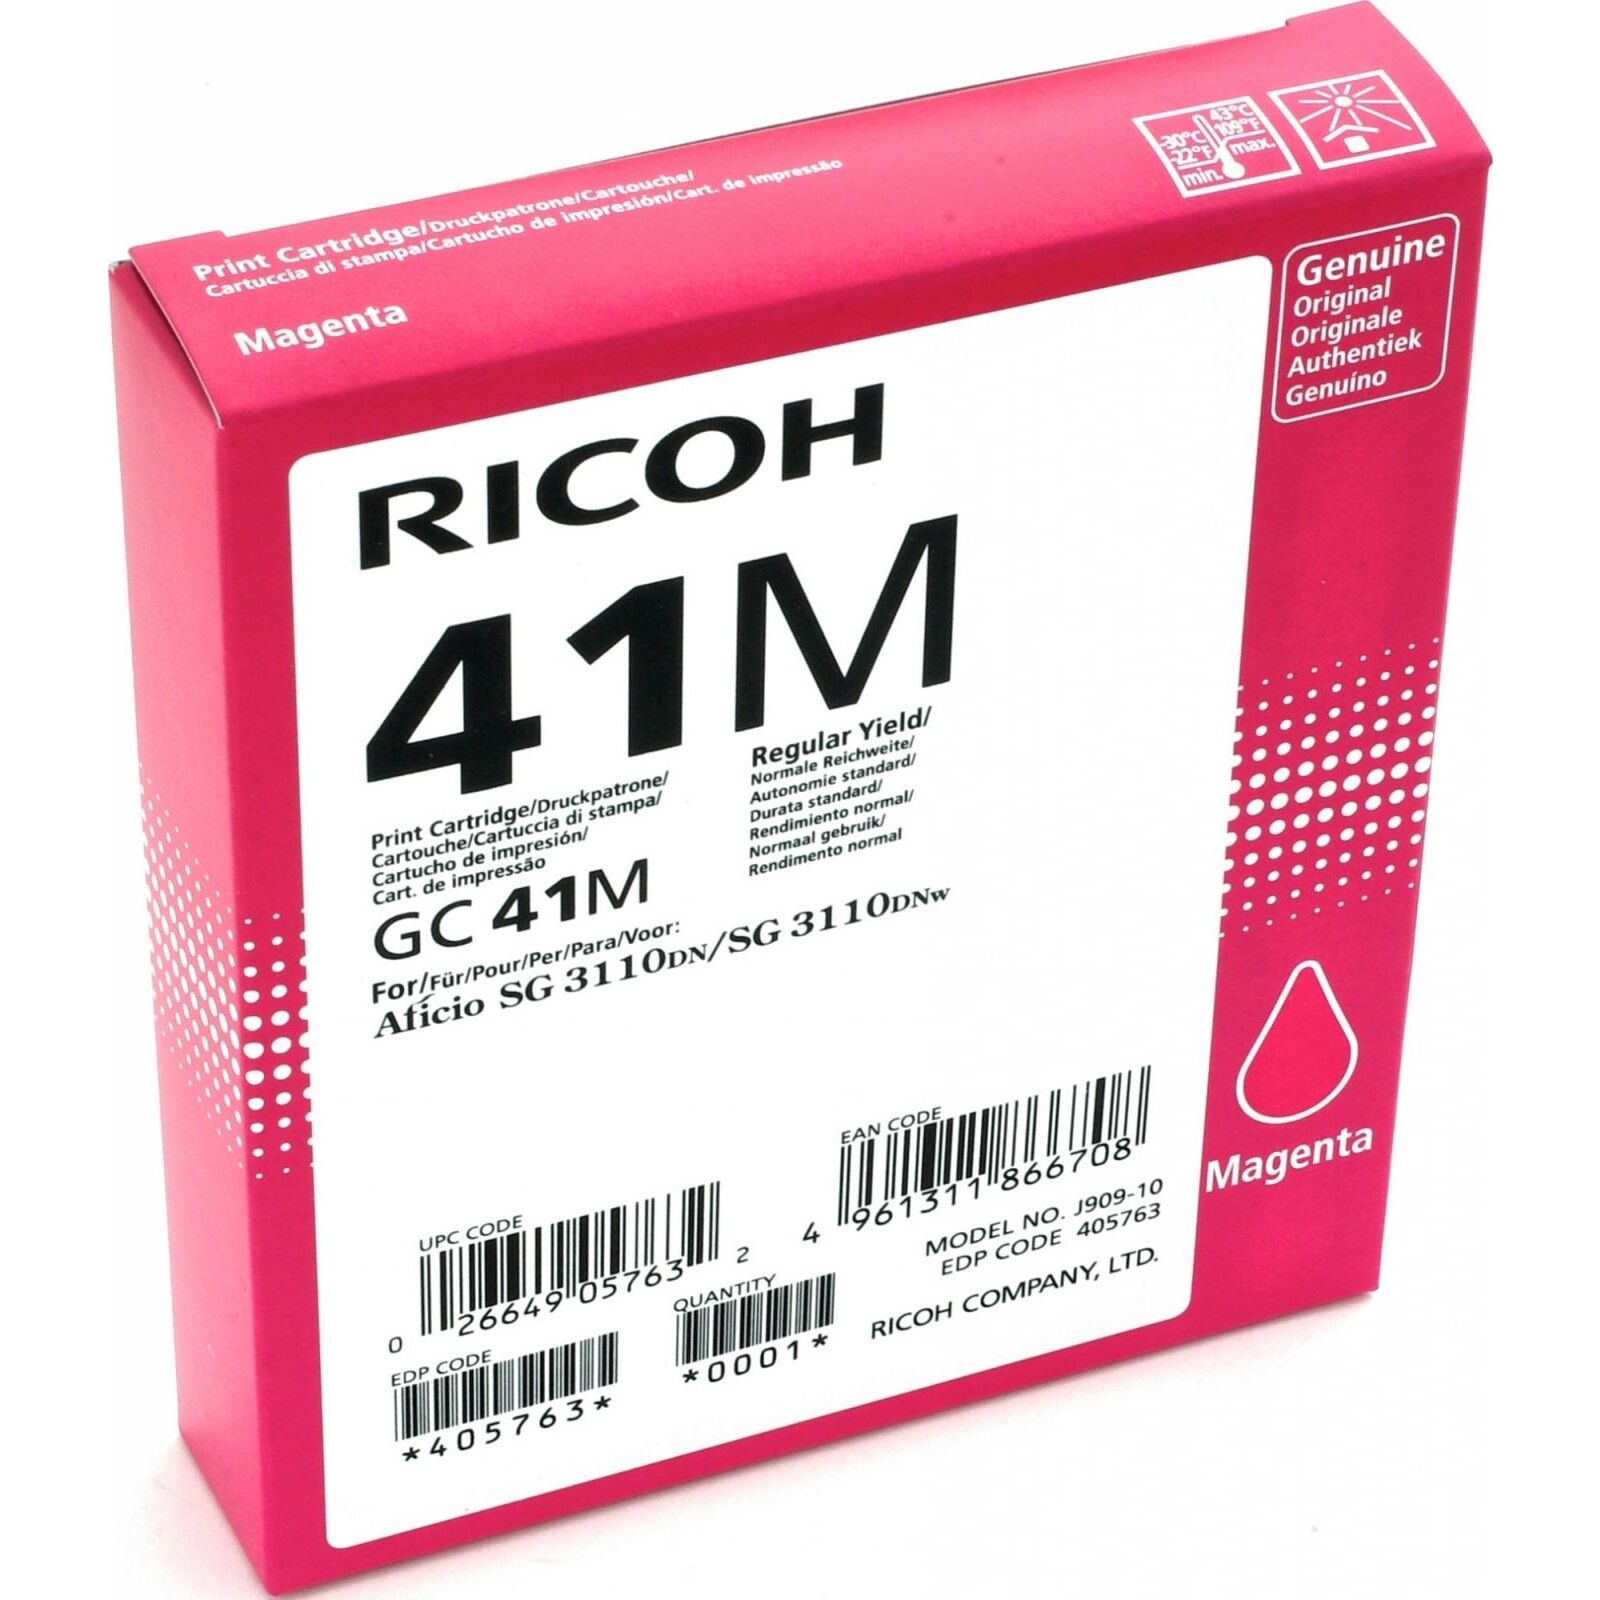 Картридж для печати Ricoh Картридж Ricoh GC41M 405763 вид печати струйный, цвет Пурпурный, емкость